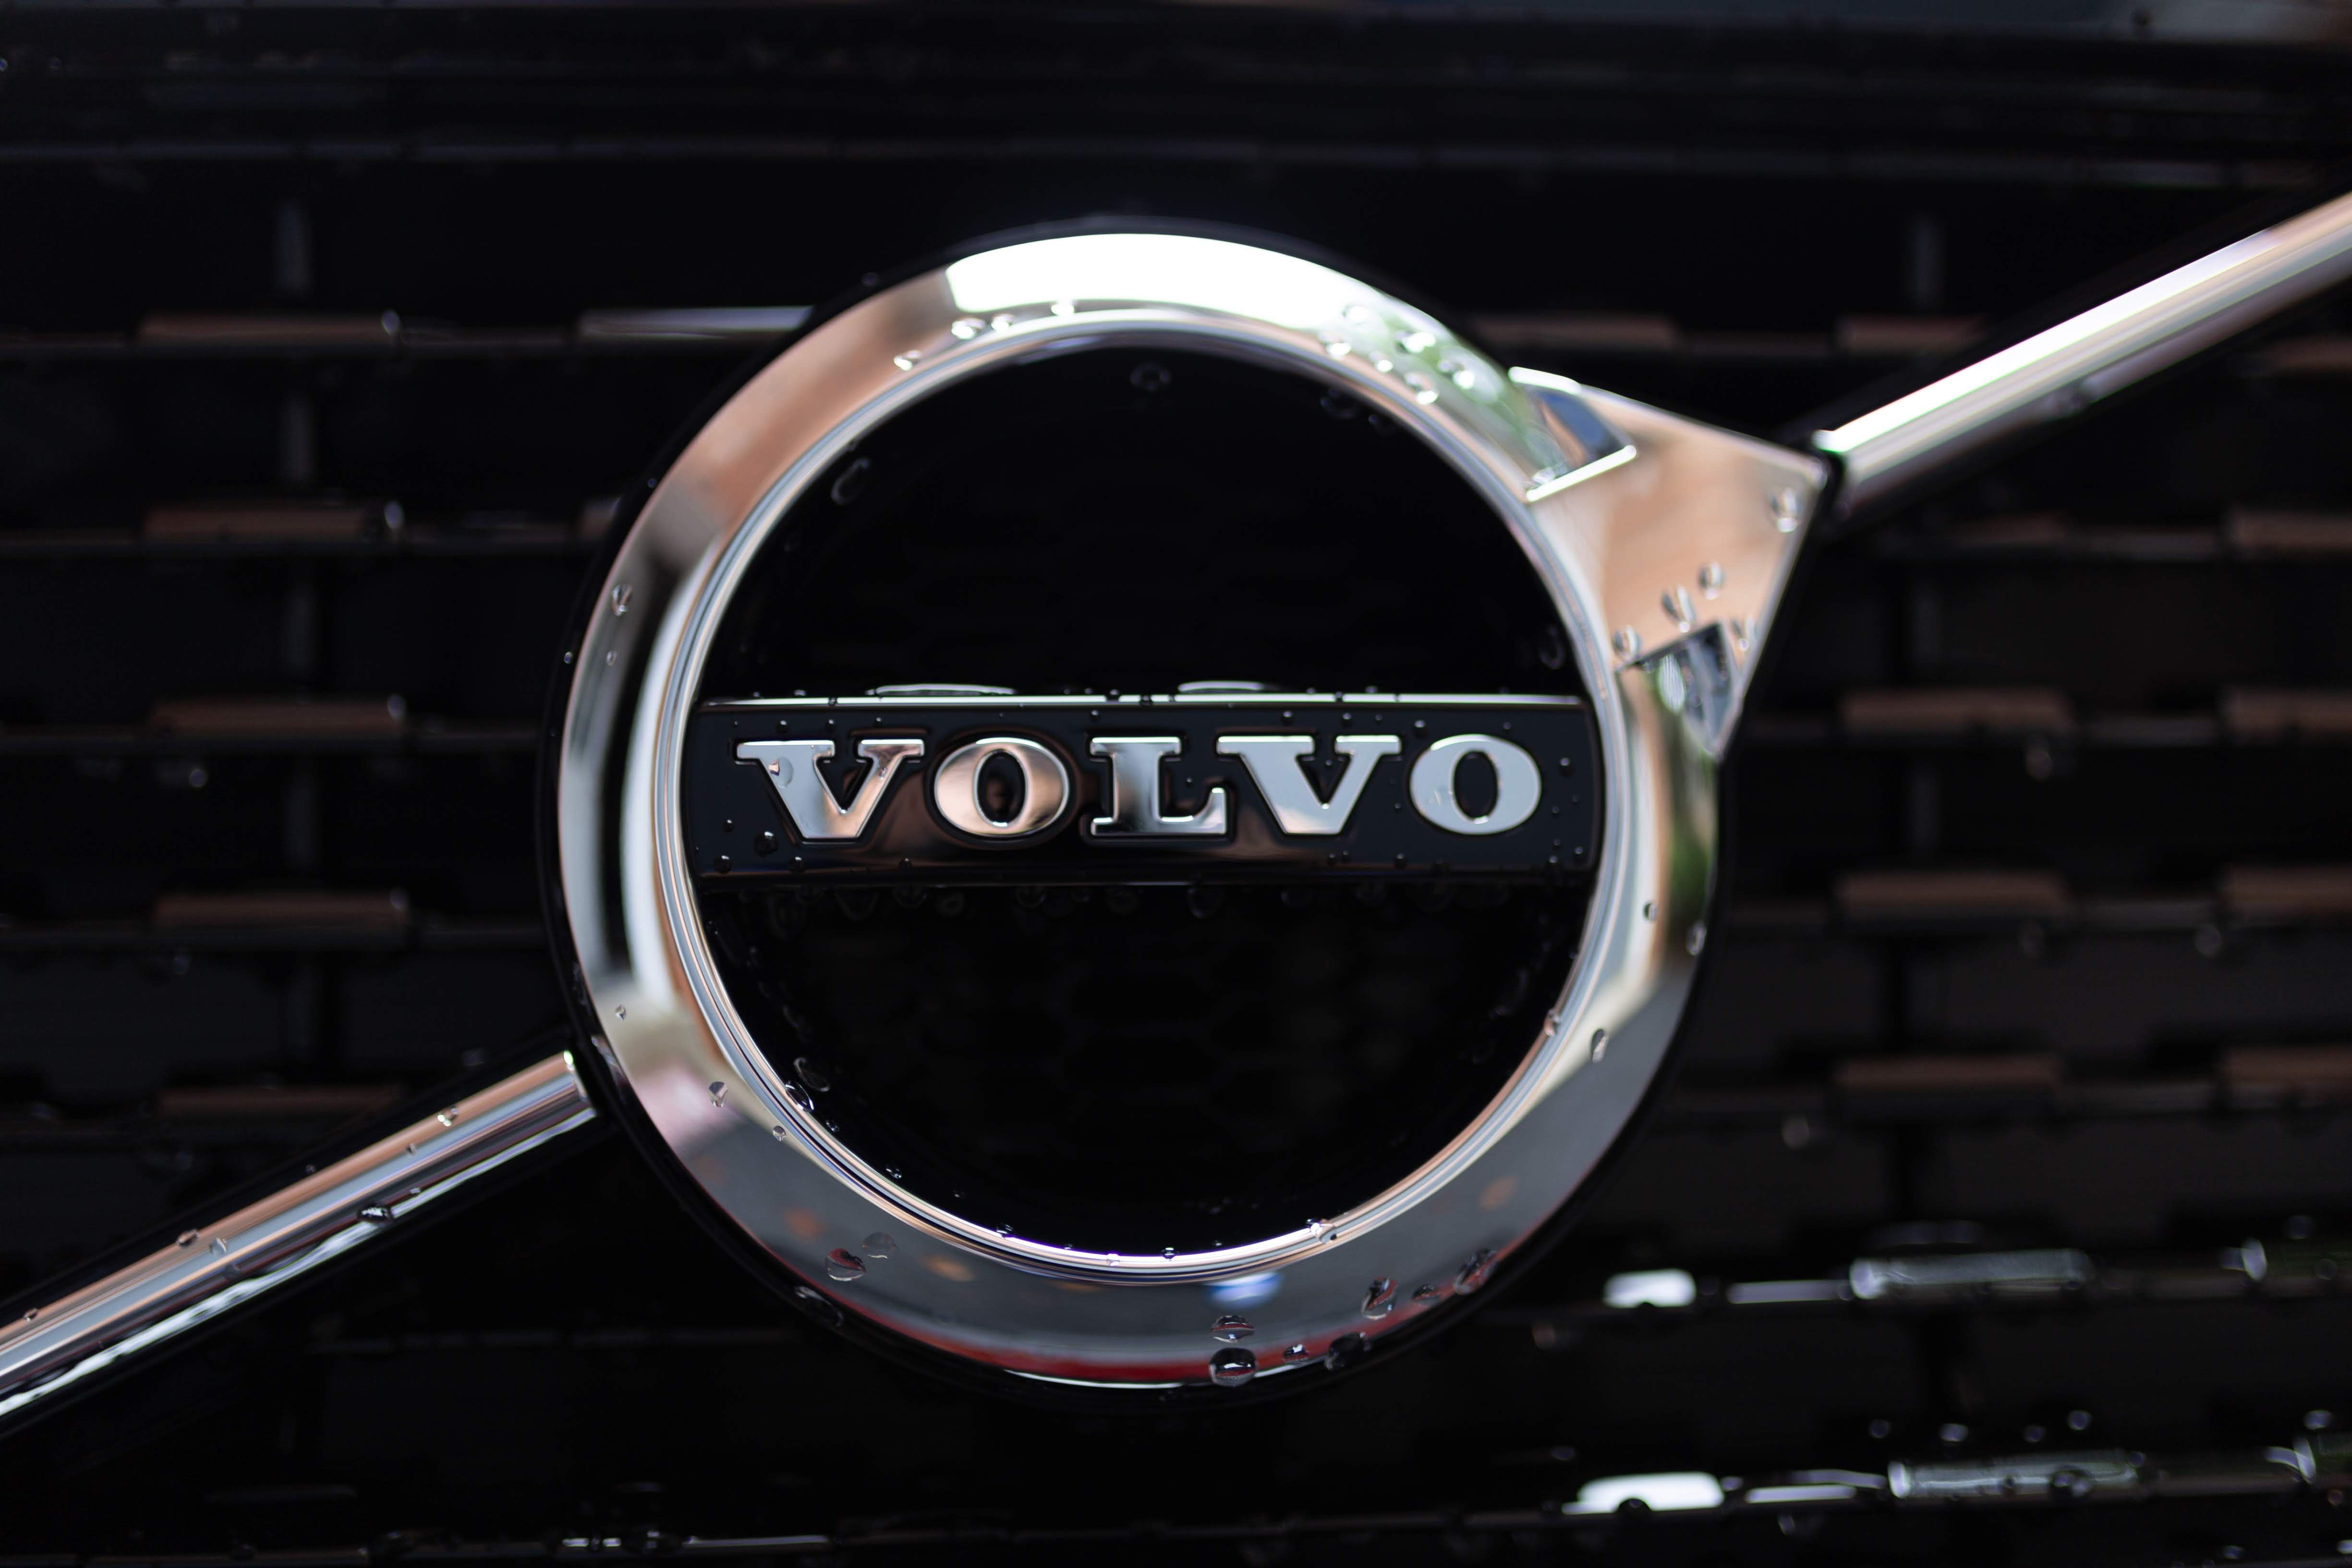 ลาแล้วเบาะหนัง! Volvo ตั้งเป้าเลิกใช้หนังสัตว์ภายในปี 2030